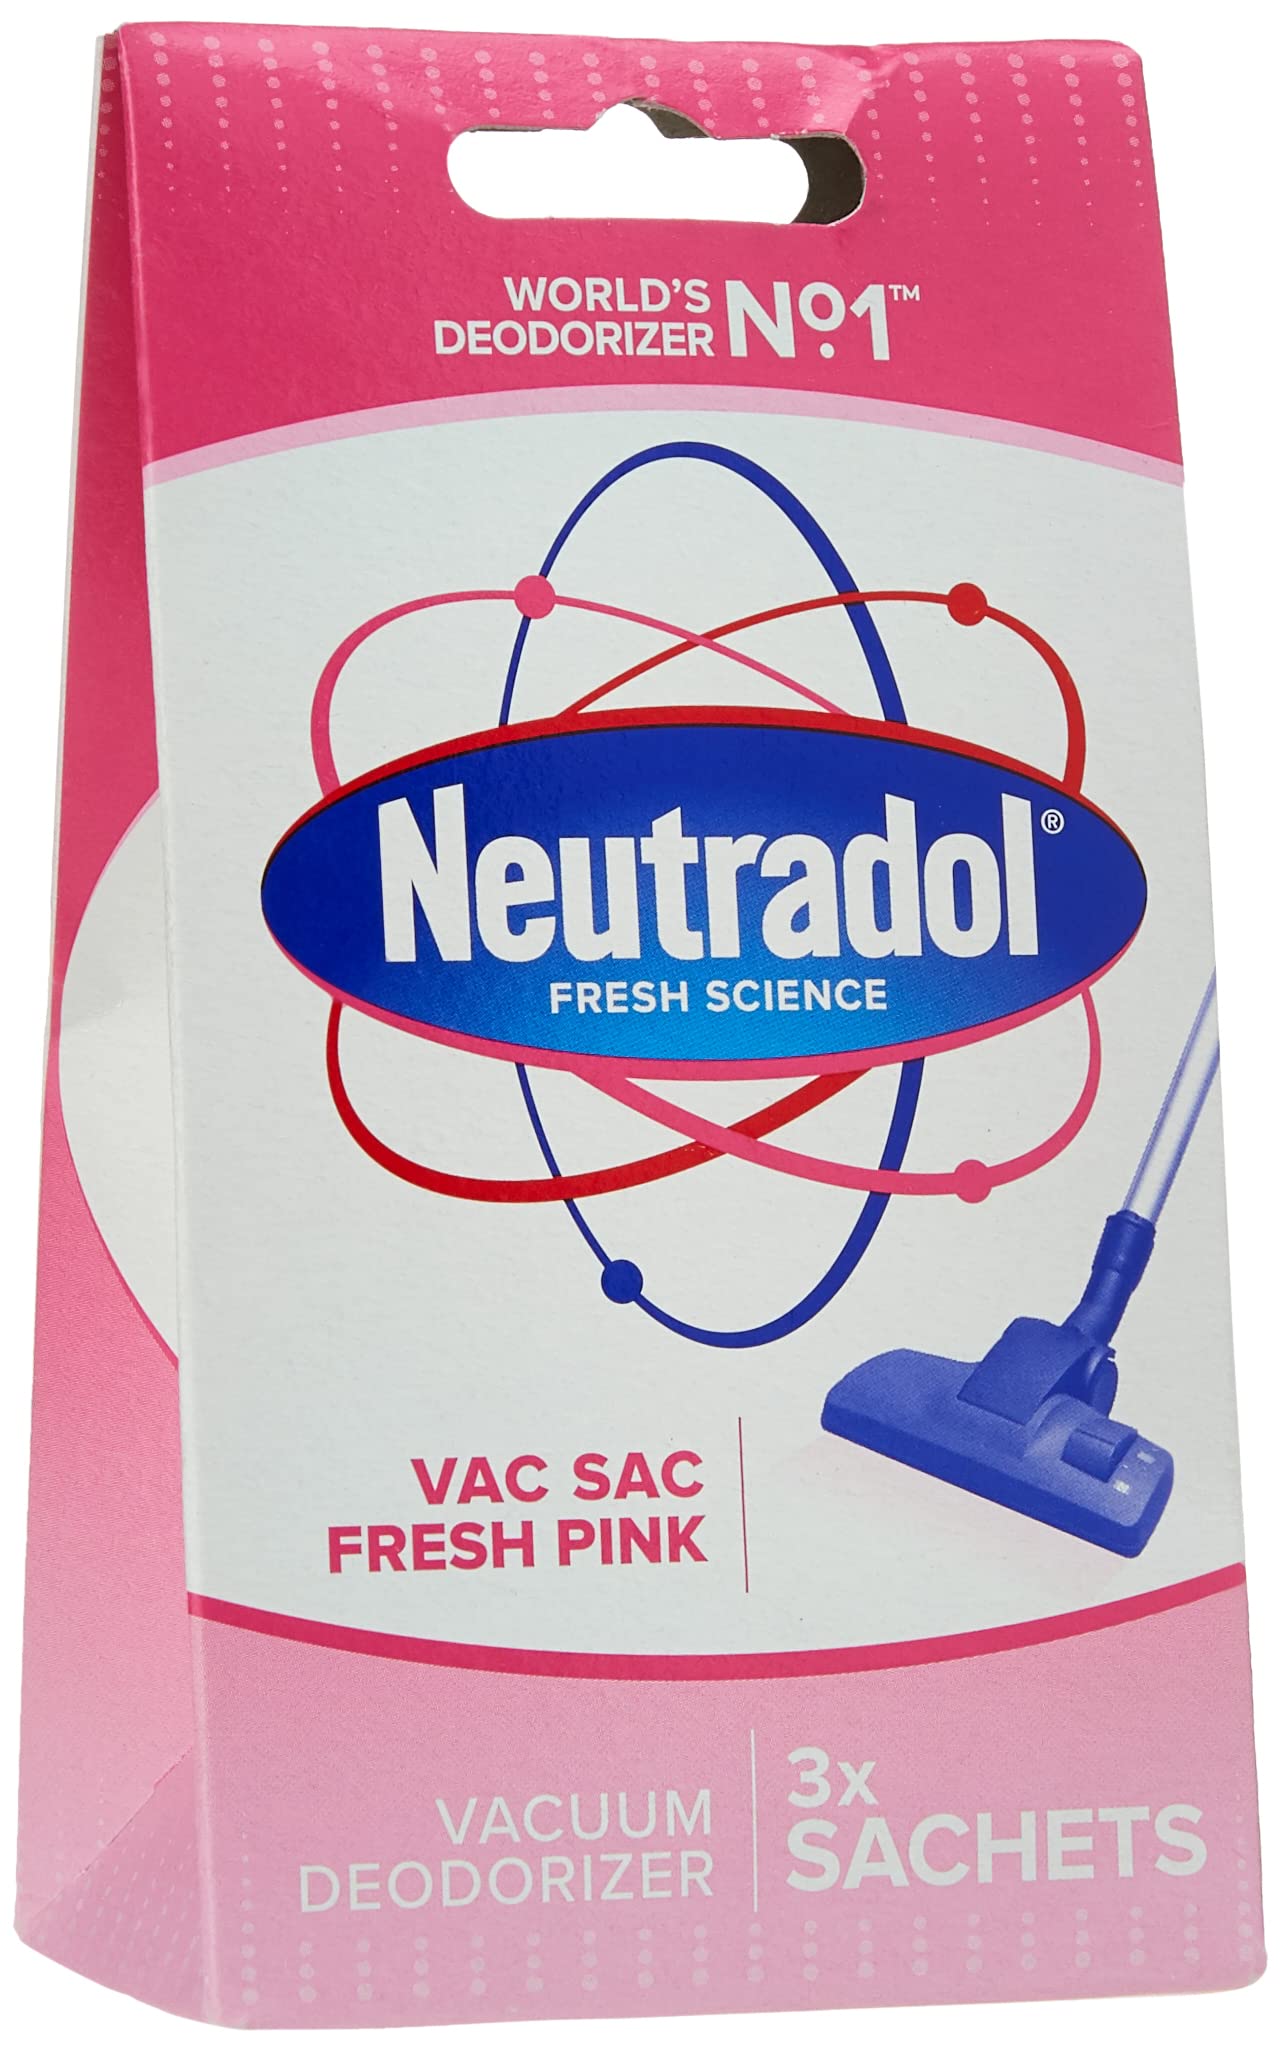 Neutradol Vac Sac Fresh Pink